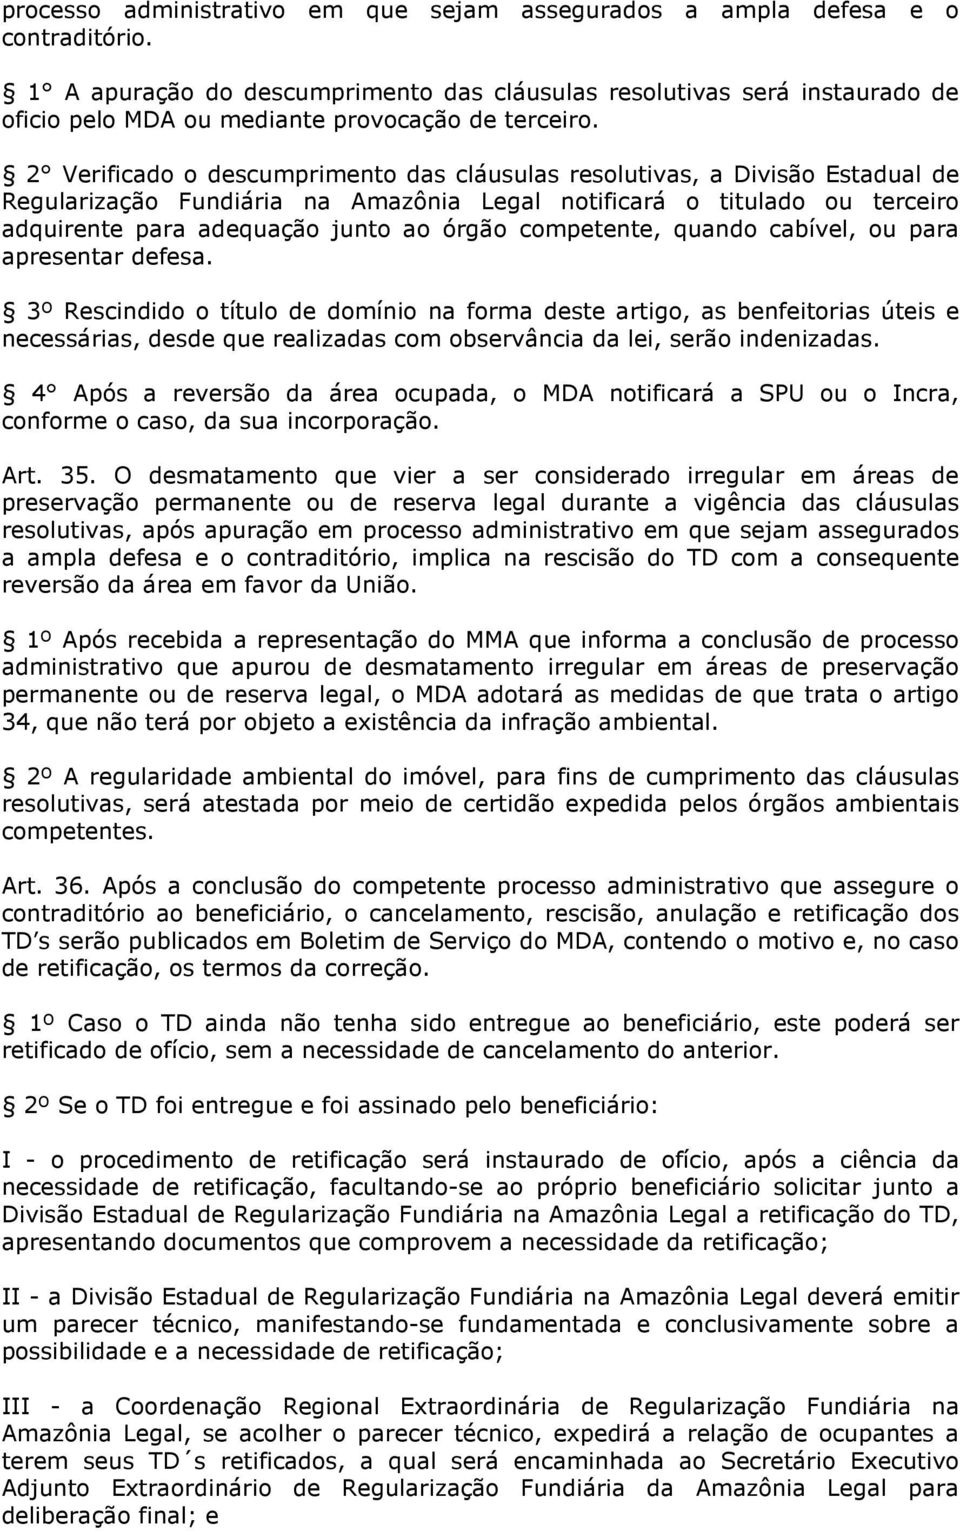 2 Verificado o descumprimento das cláusulas resolutivas, a Divisão Estadual de Regularização Fundiária na Amazônia Legal notificará o titulado ou terceiro adquirente para adequação junto ao órgão